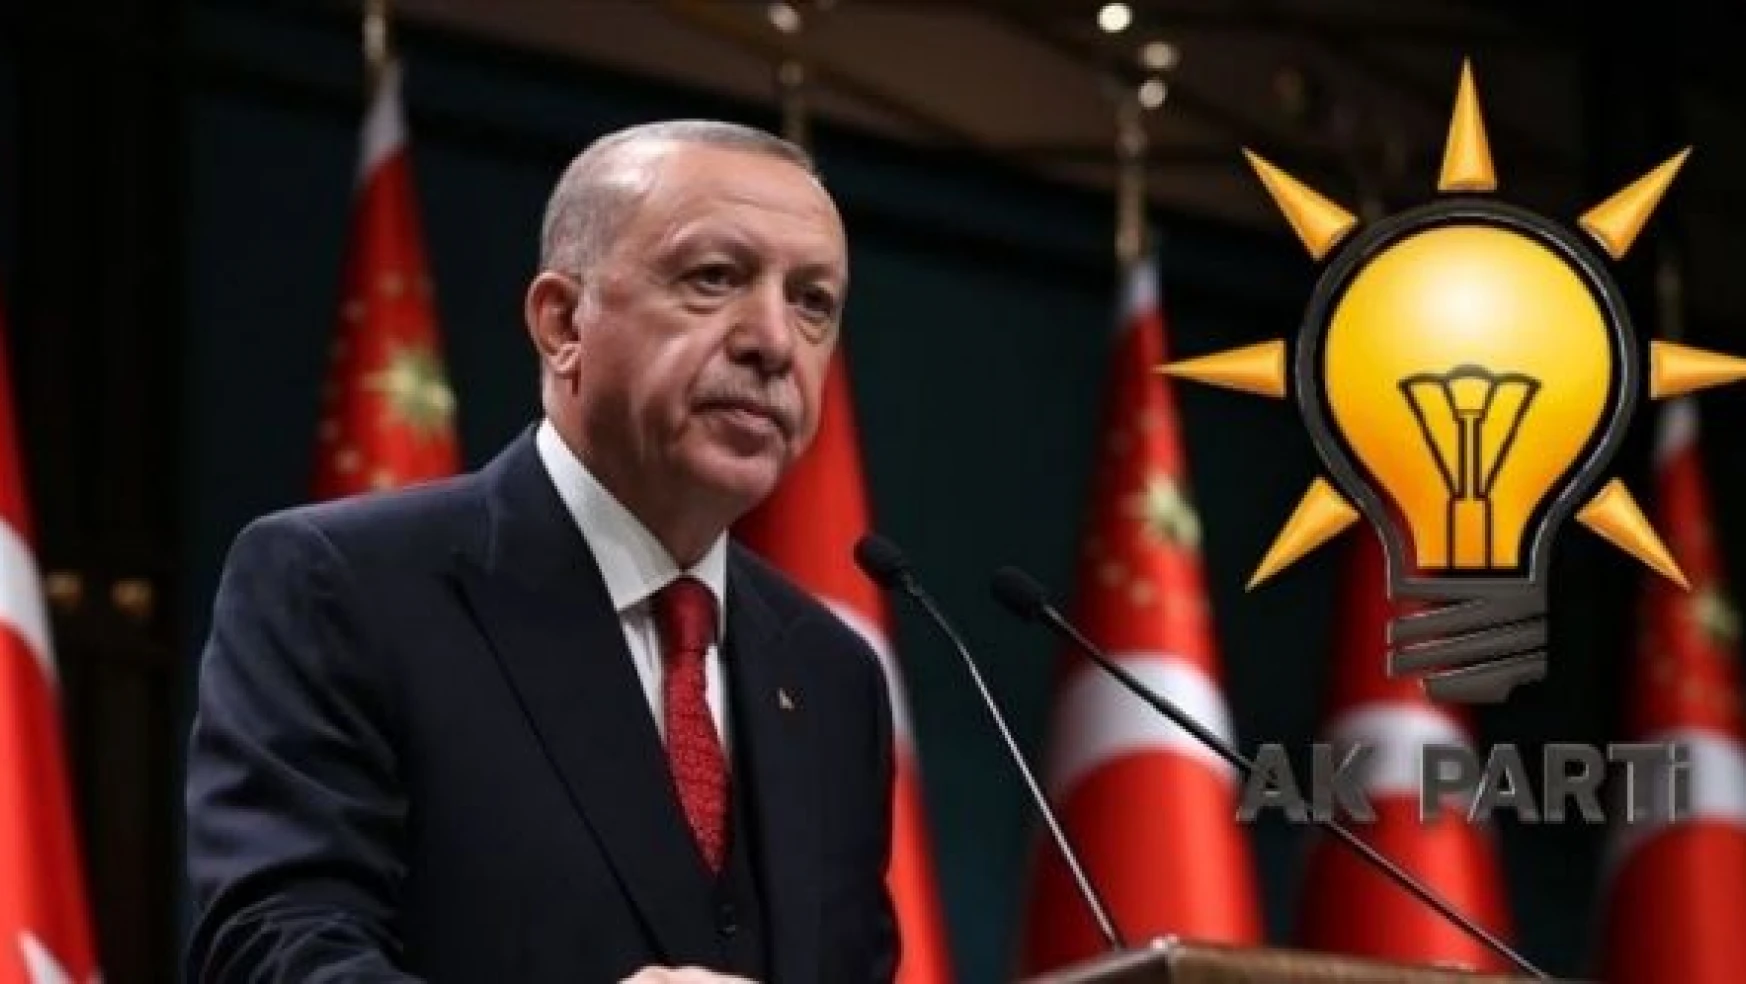 AK Partililer, Cumhurbaşkanı Erdoğan'ın Cumhurbaşkanı adaylığı için imza topluyor